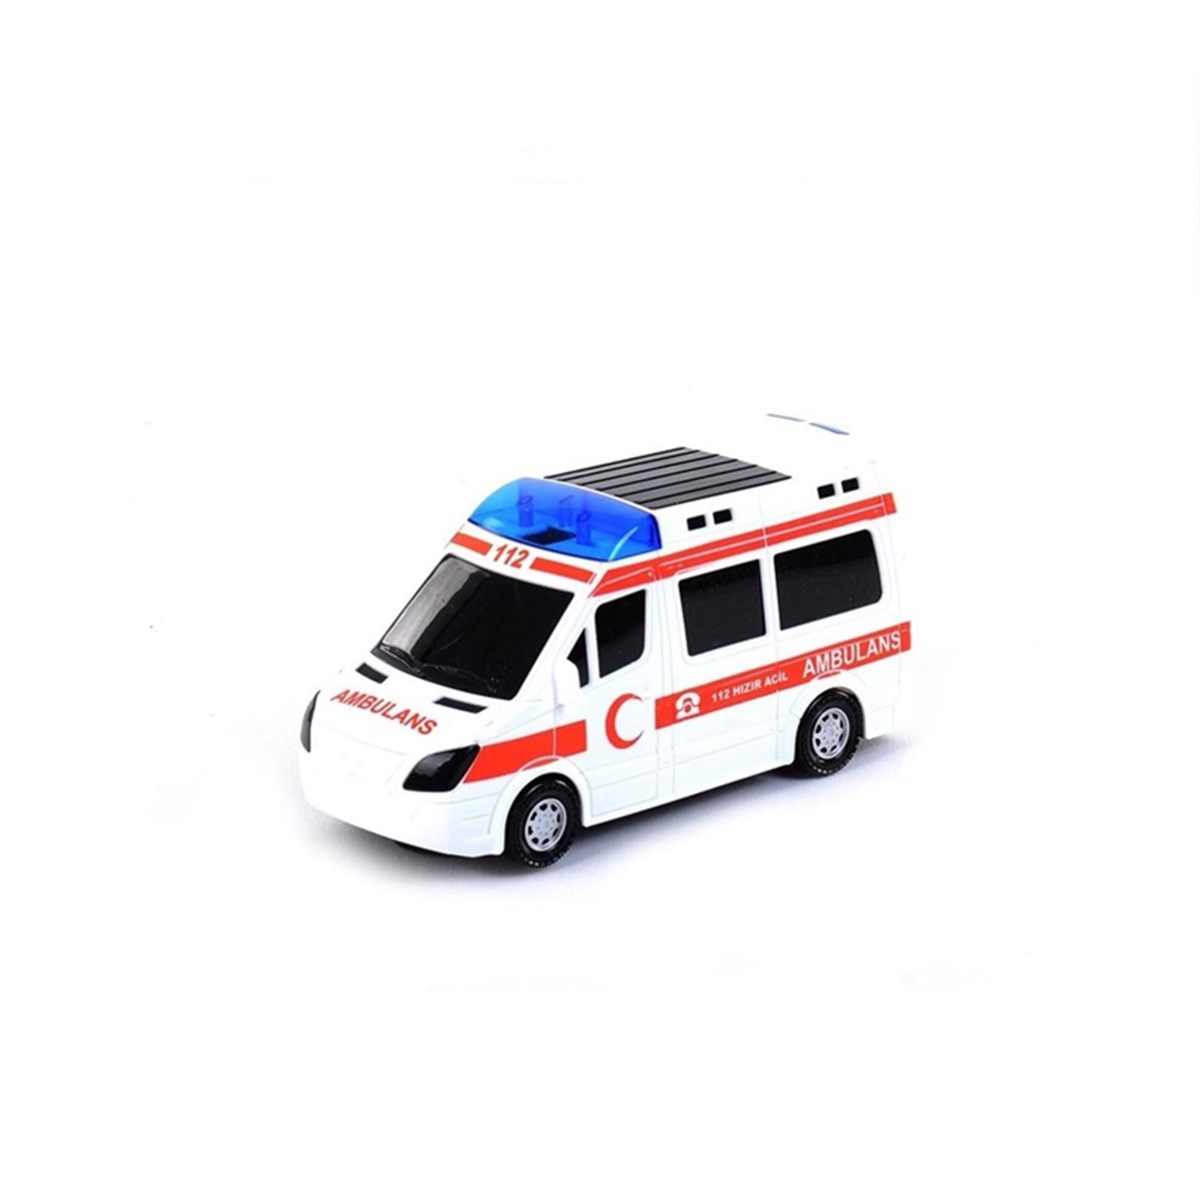 Can Oyuncak CN2093 Kutulu Sesli Işıklı Pilli Ambulans | sislon.com